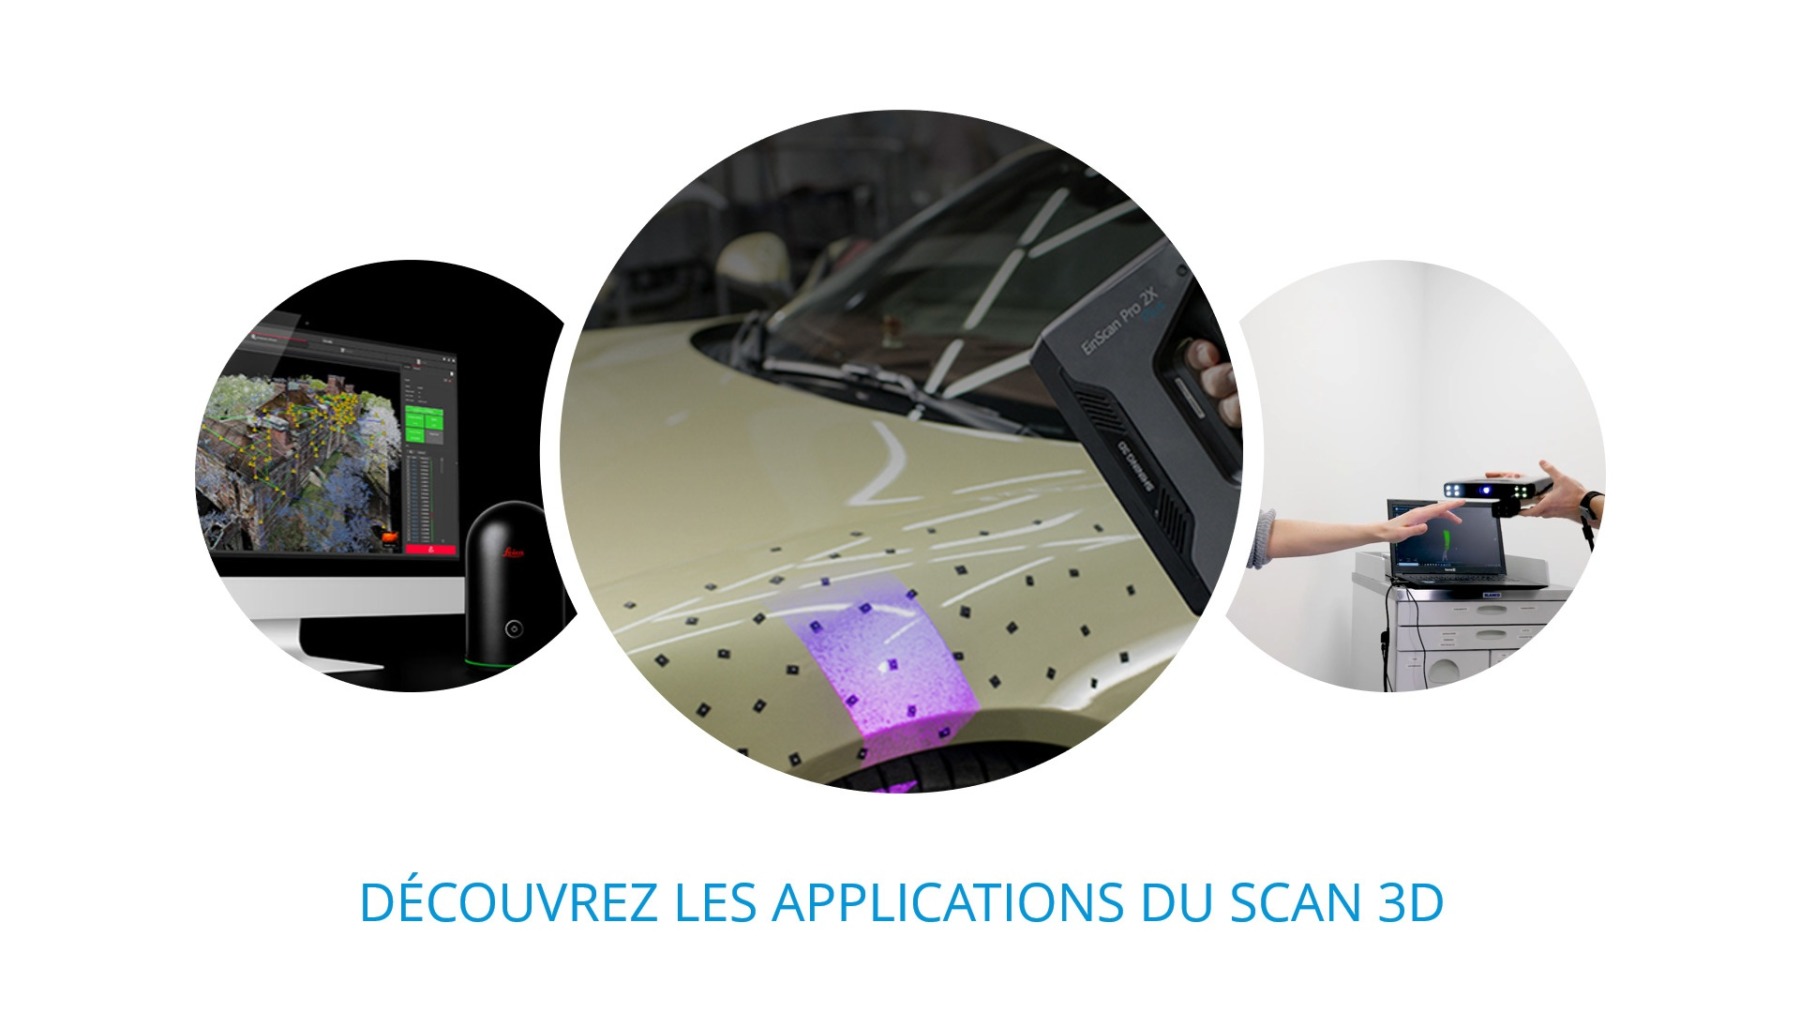 Visuel header scan 3D applications